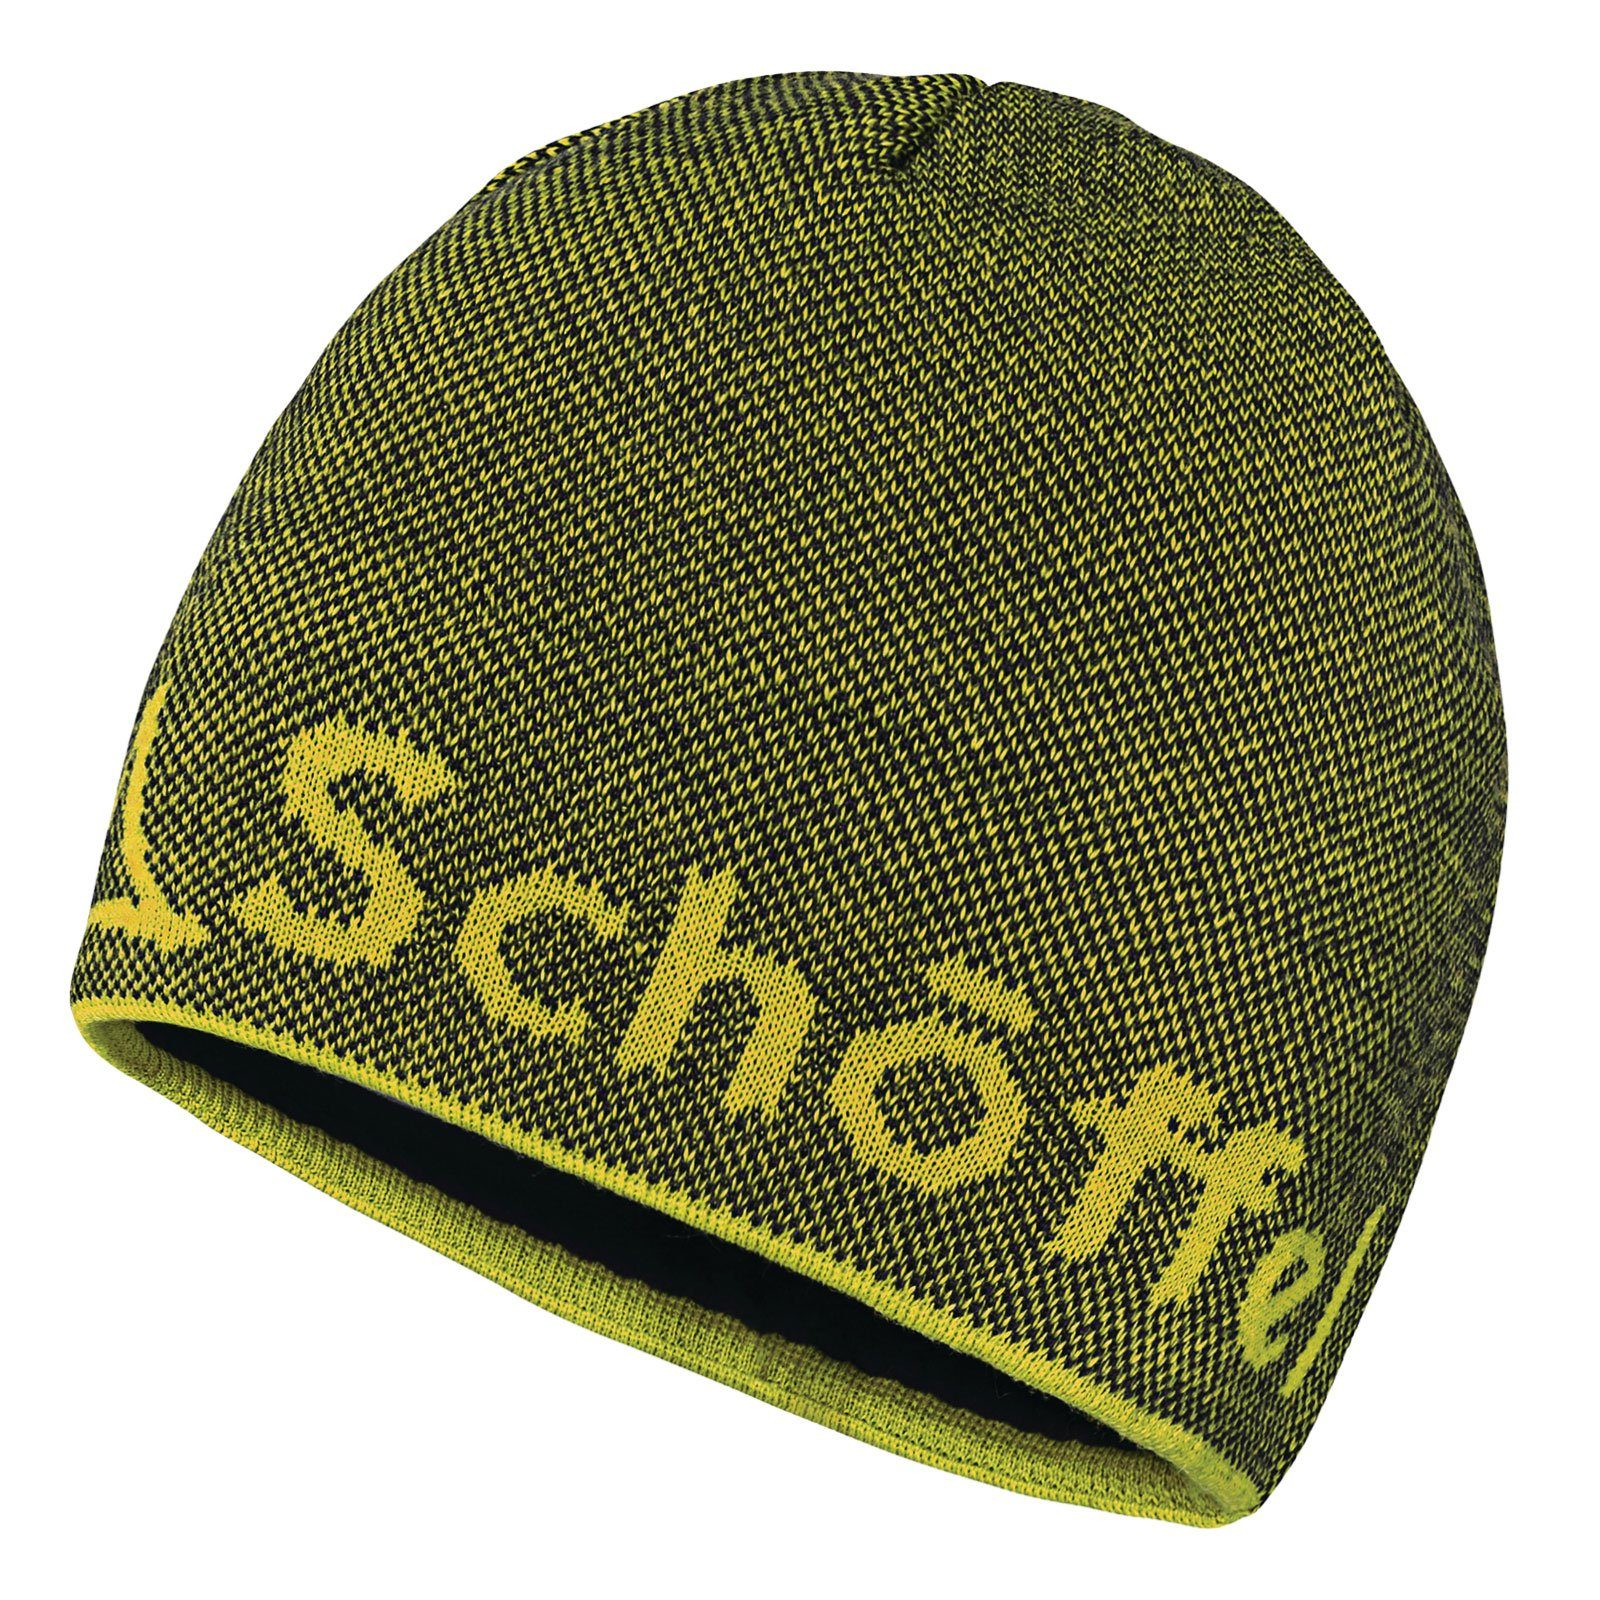 Schoeffel Schöffel Strickmütze Knitted Hat Klinovec mit eingestricktem Schöffel-Logo 9990 black